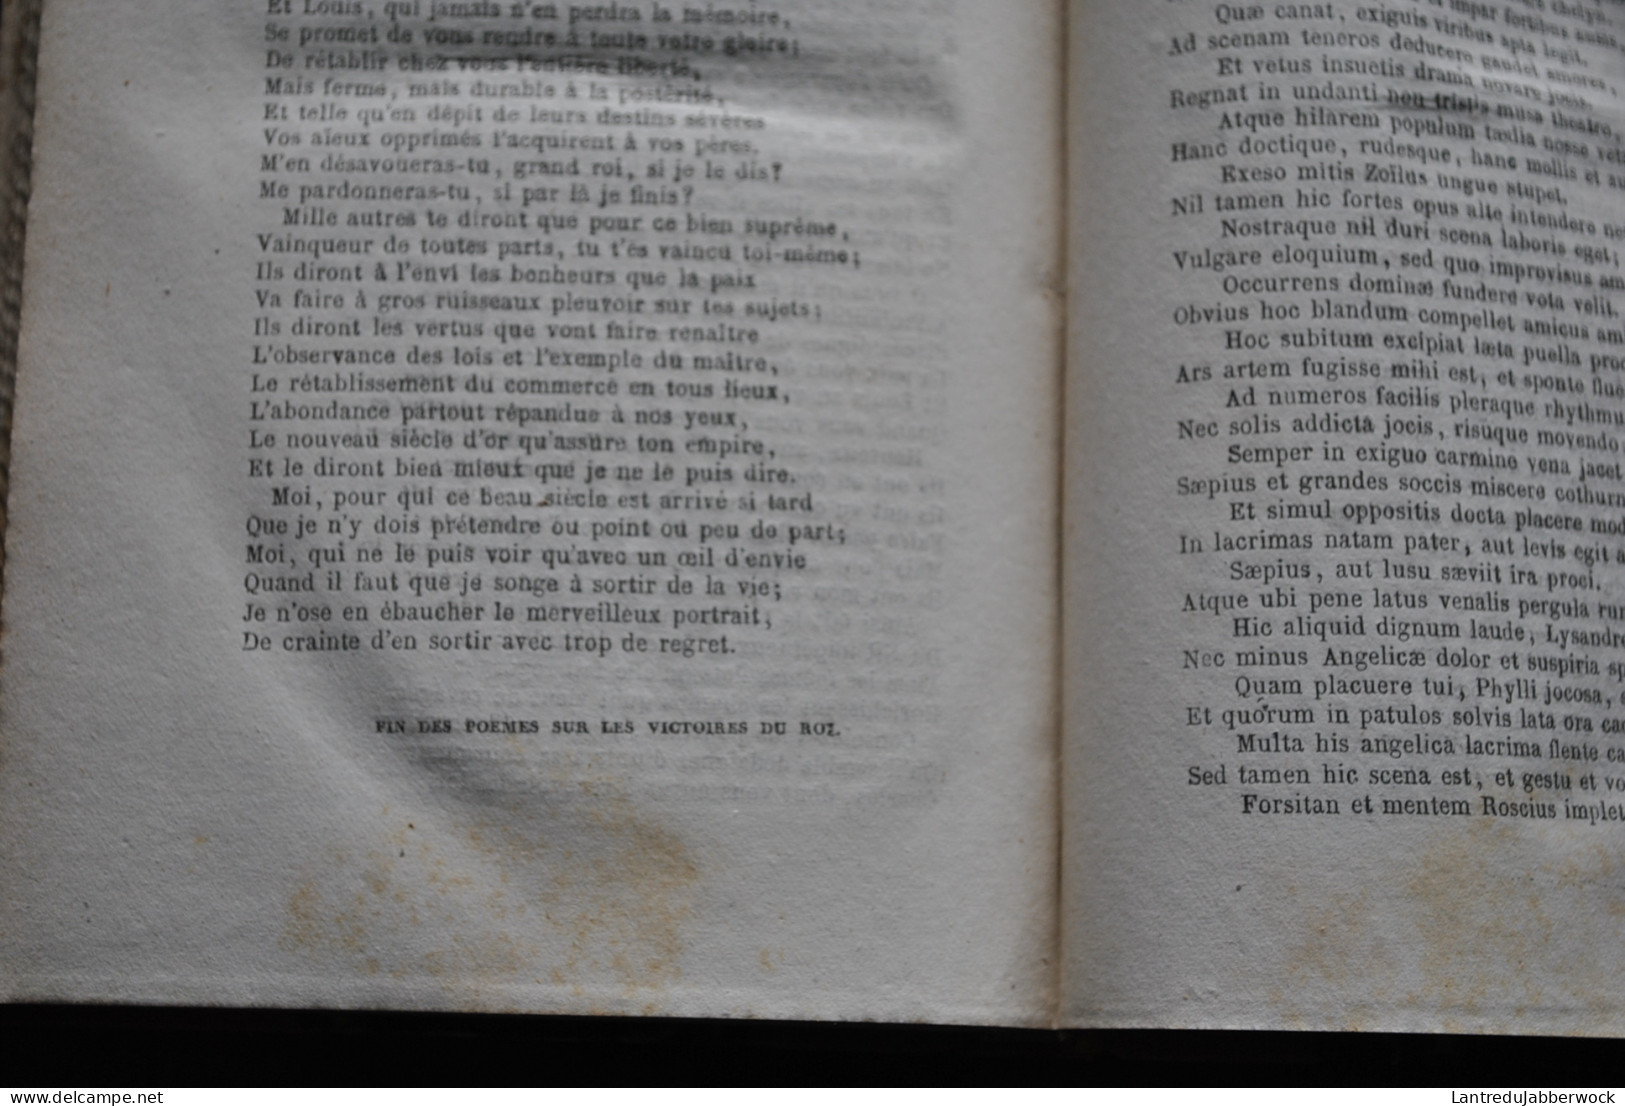 Oeuvres complètes de Pierre CORNEILLE TOME 1 2 3 4 5 6 7 COMPLET Librairie Hachette 1864 - 1866 Reliure dos cuir KEUTH